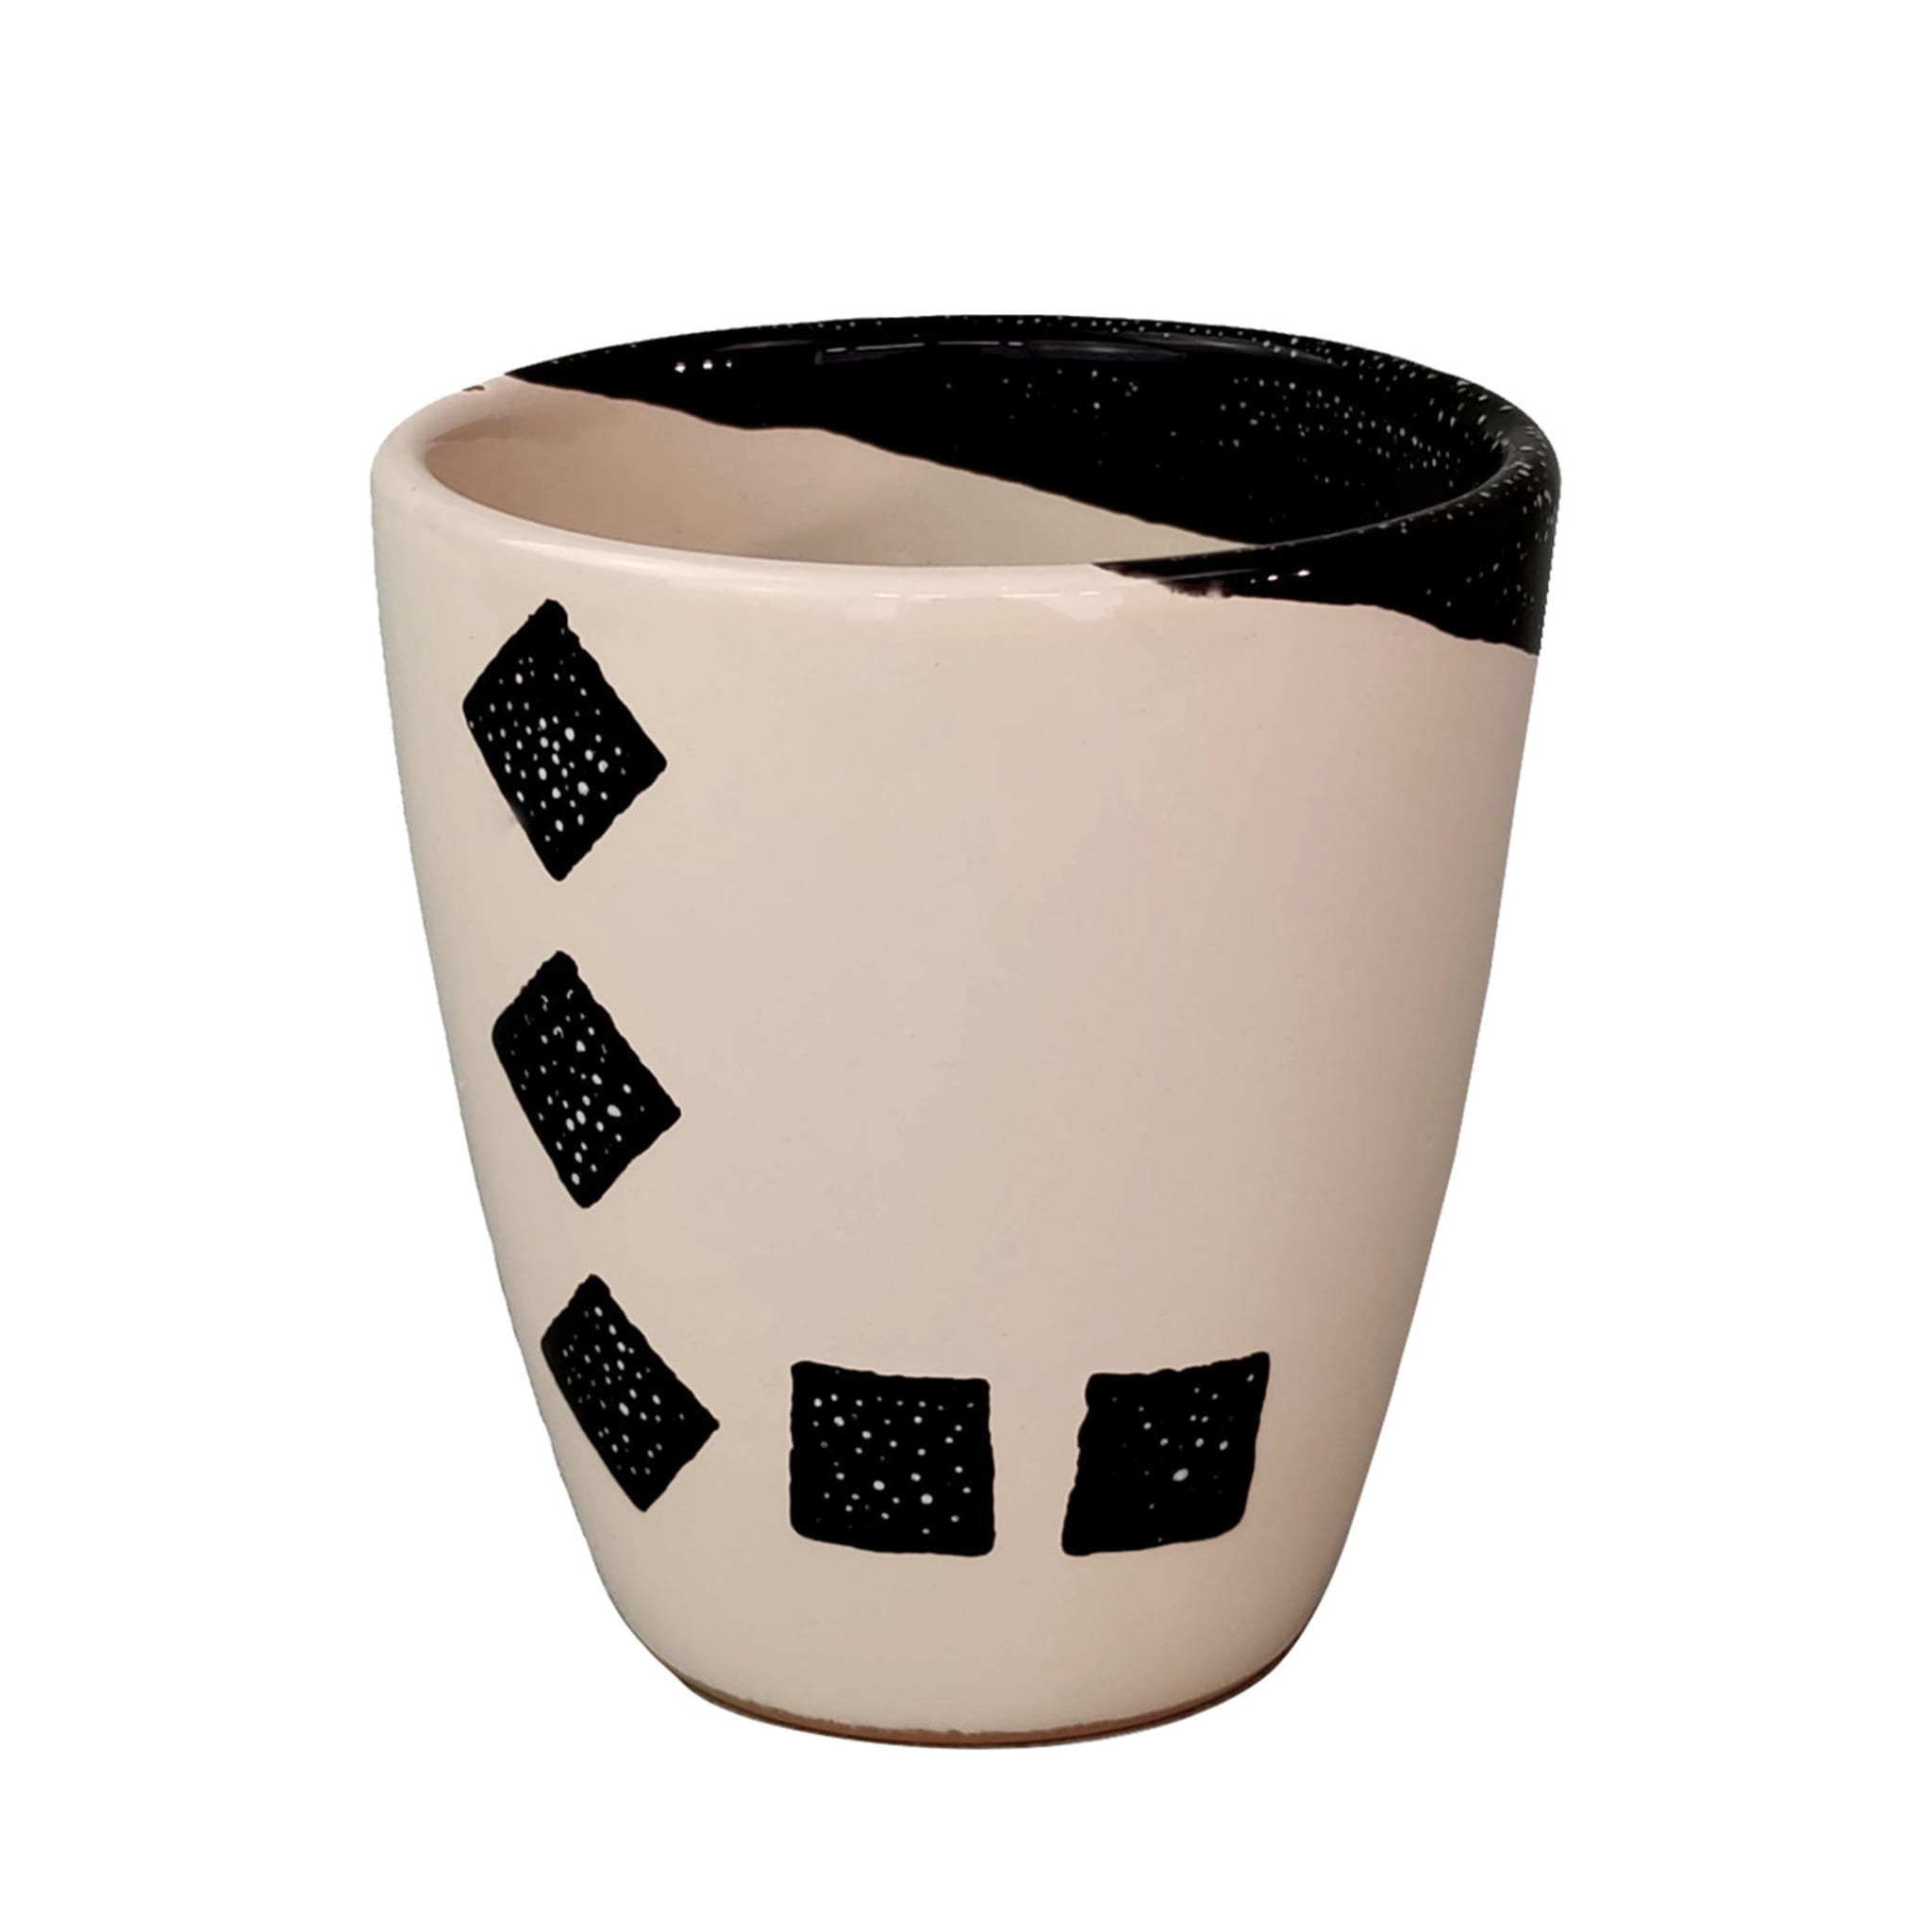 Nuova Colì s.r.l. on X: Nuova Colì: La Ceramica tradizionale pugliese.  #ceramics #ceramica #puglia #salento #italianpottery colisrl.it   / X